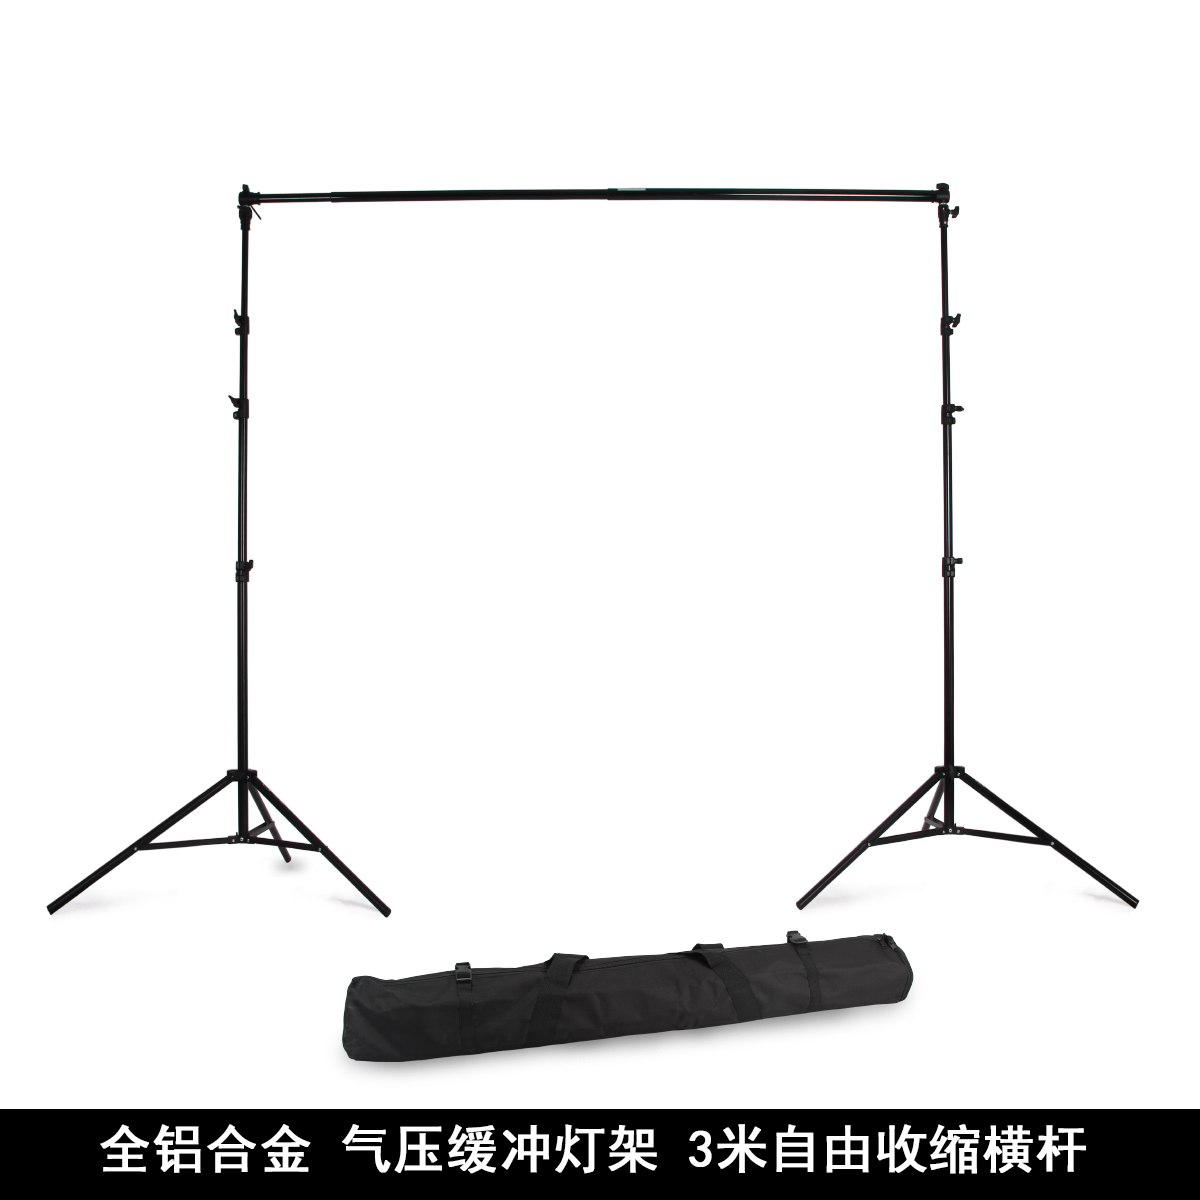 金鹰2.8*3米背景架摄影铝合金便携伸缩背景布架摄影灯摄影棚支架